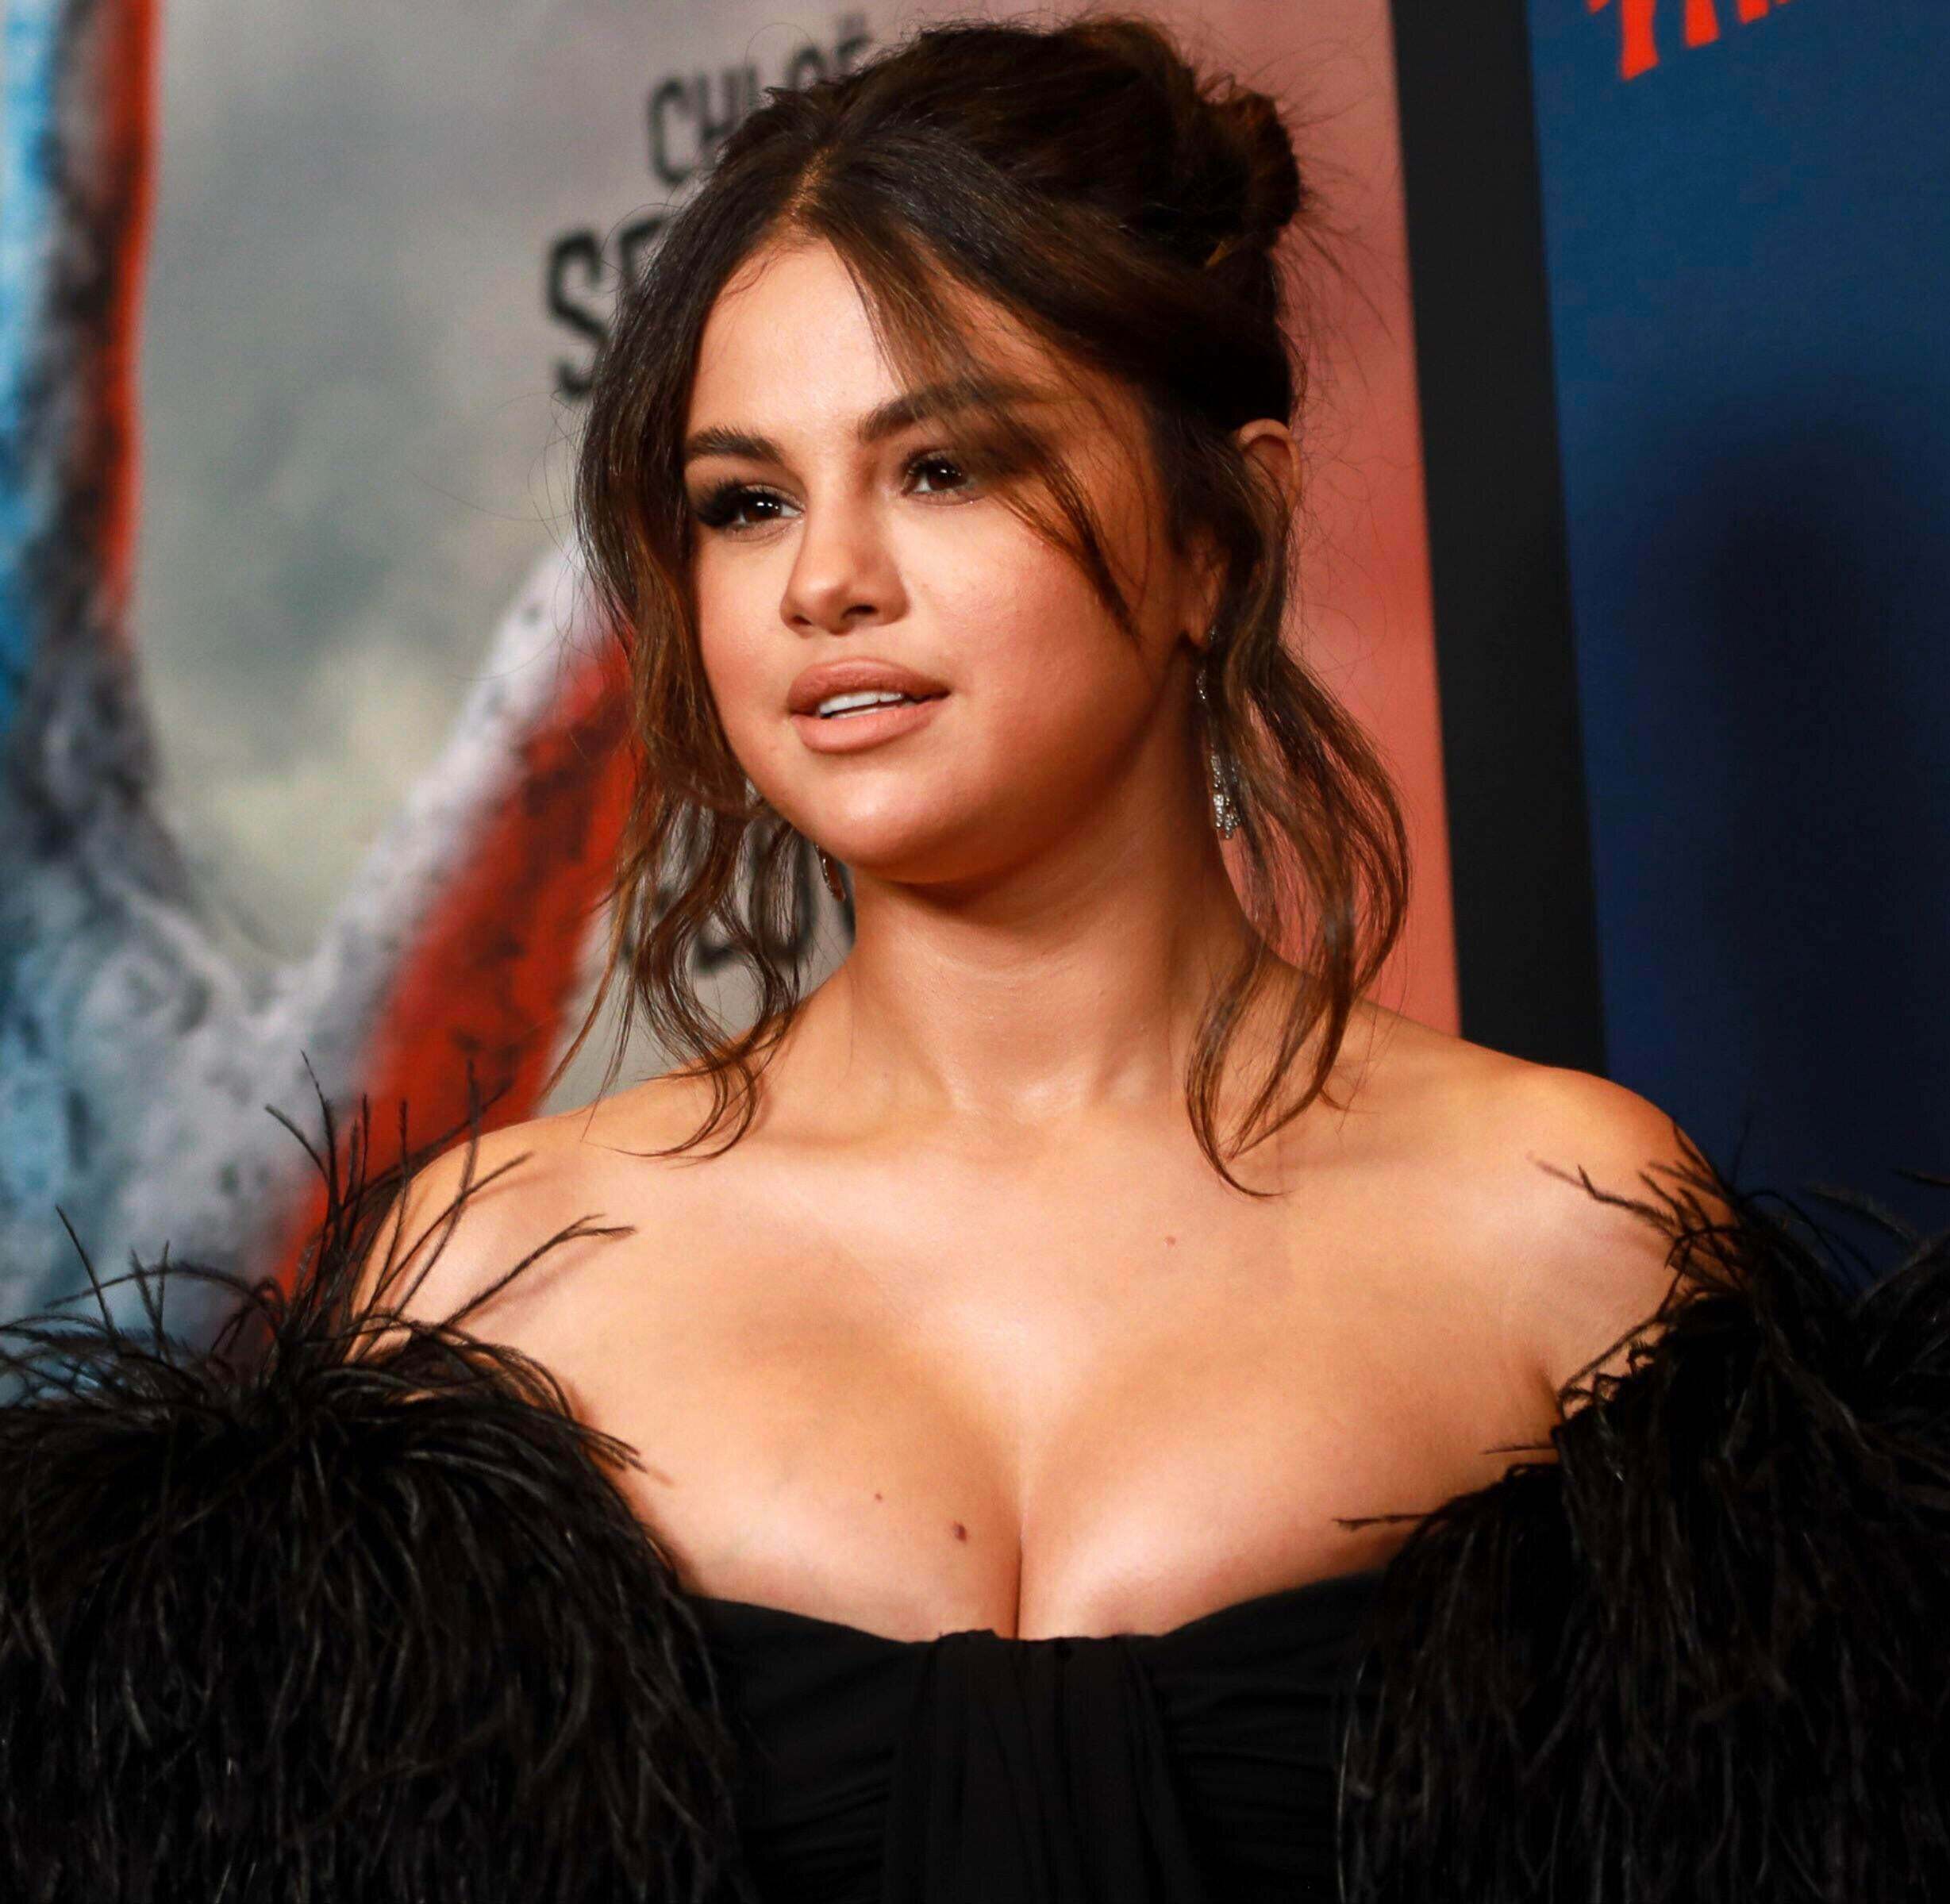 Selena Gomez needs a cock between her tits